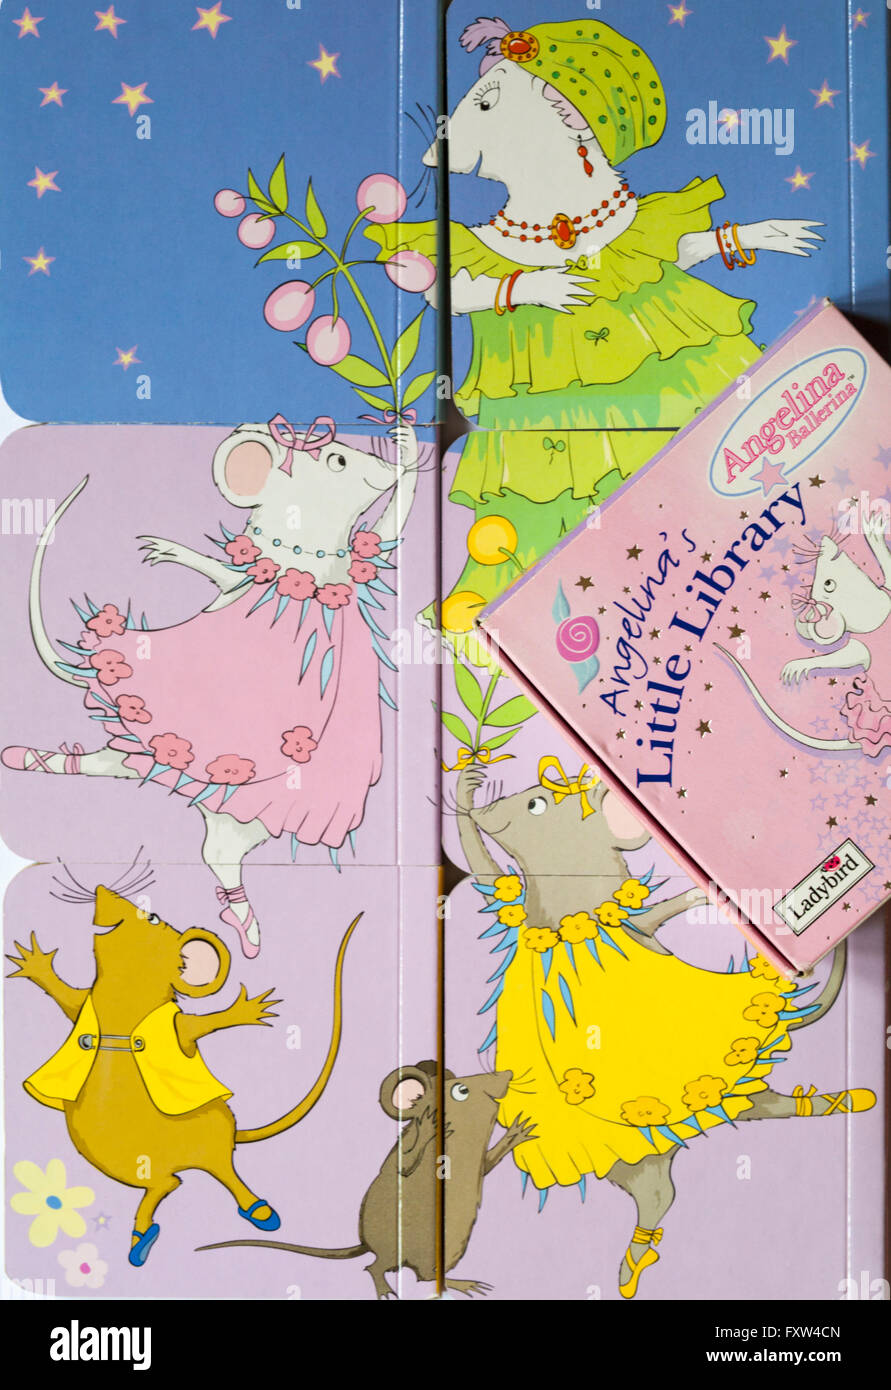 Angelina Angelina Ballerina's kleine Bibliothek Bücher umgedreht ein hübsches Bild Puzzle durch Marienkäfer mit Mäusen tanzen zu machen Stockfoto